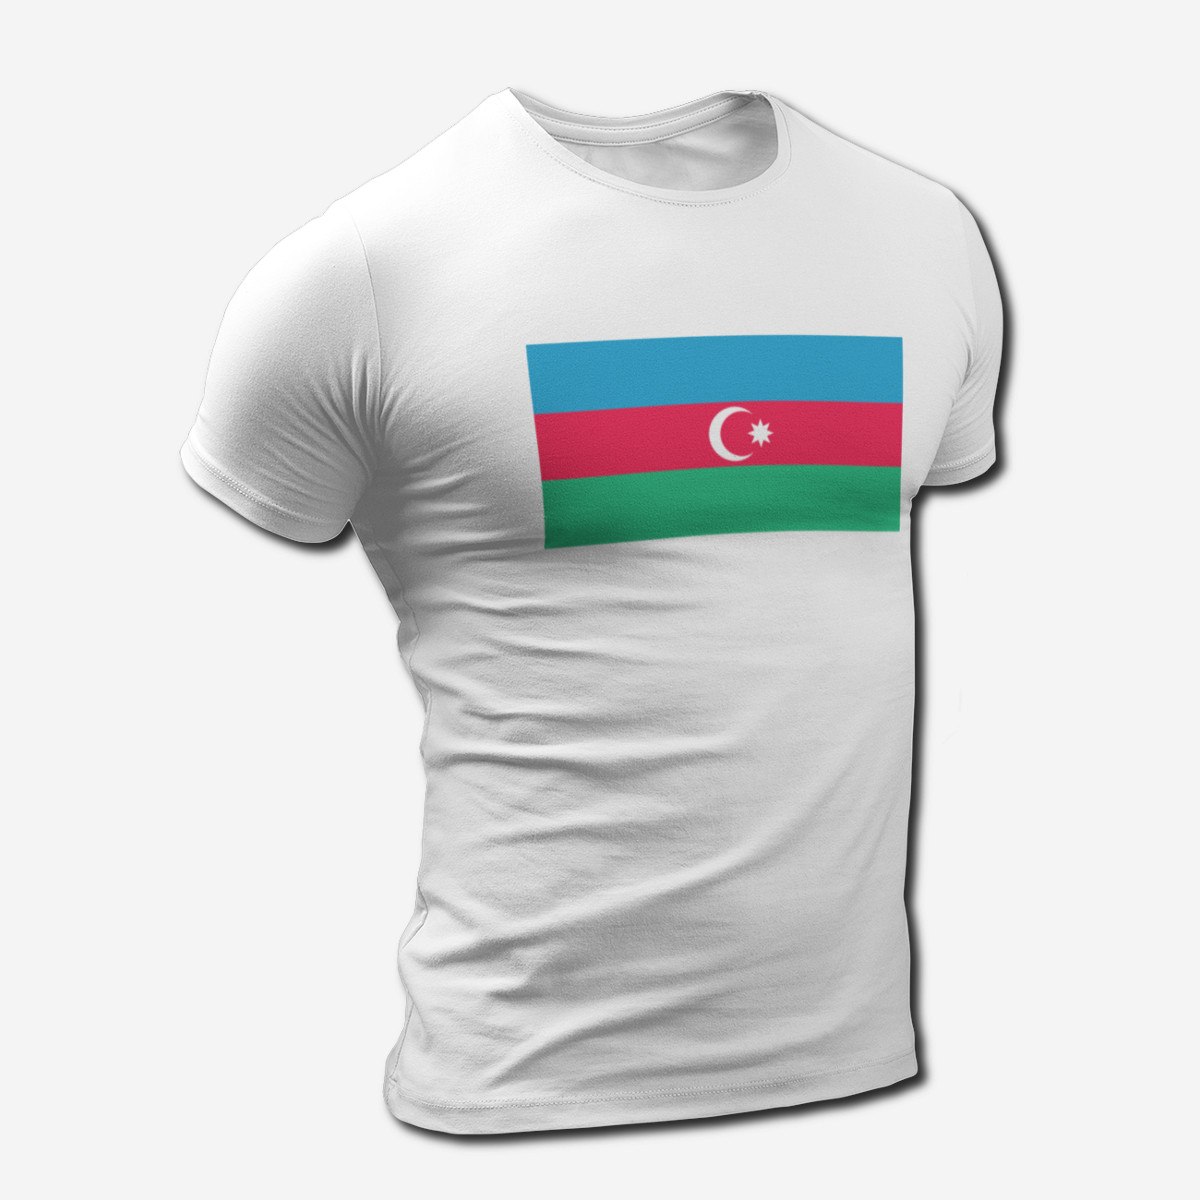 Флаг майка. Футболка Азербайджан. Футболка с азербайджанским флагом. Одежда с флагом Азербайджана. Футболки с азербайджанской символикой.